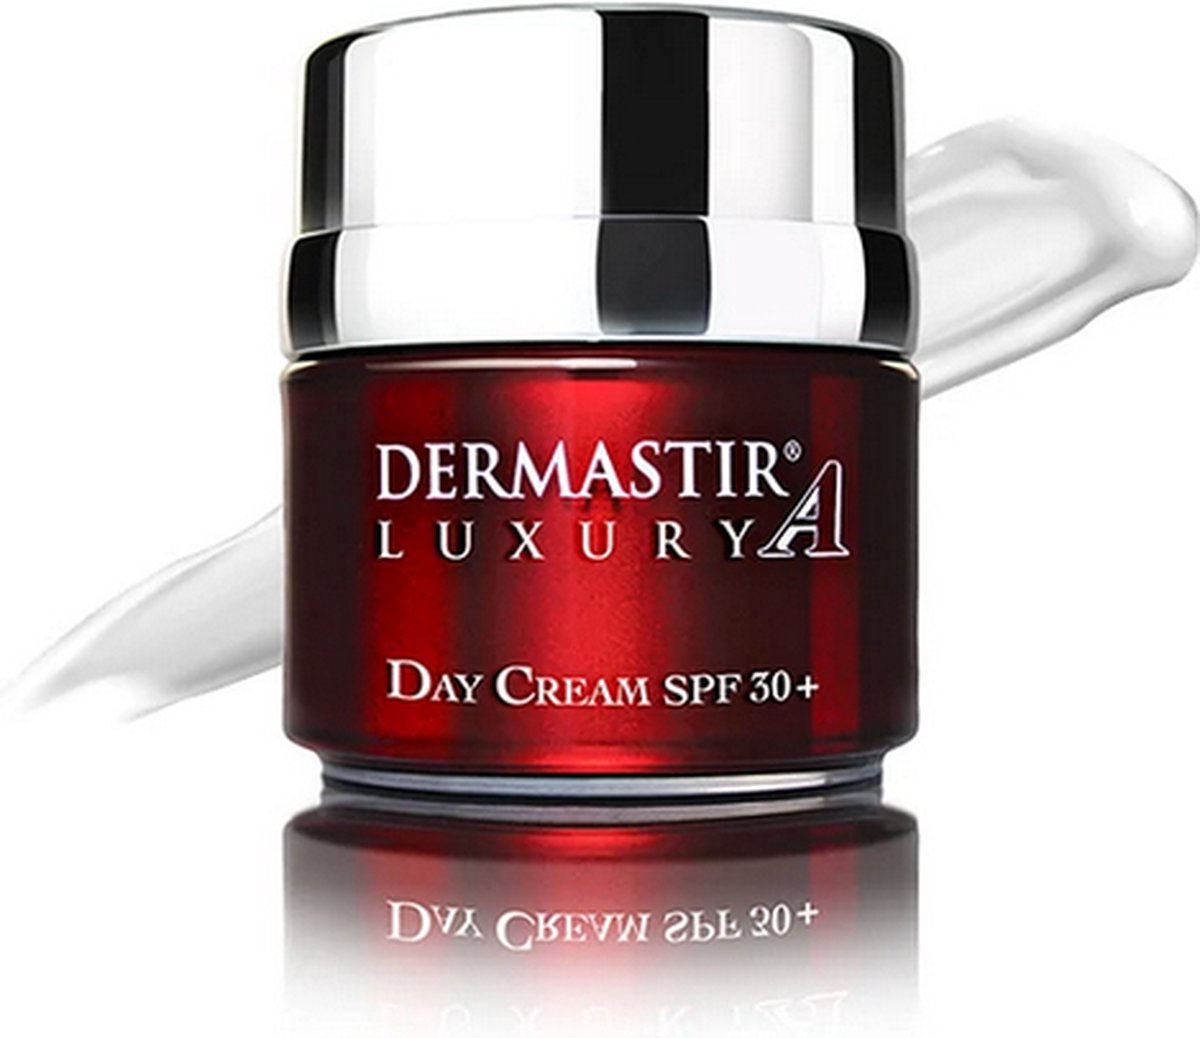 Dermastir Day Cream SPF30+